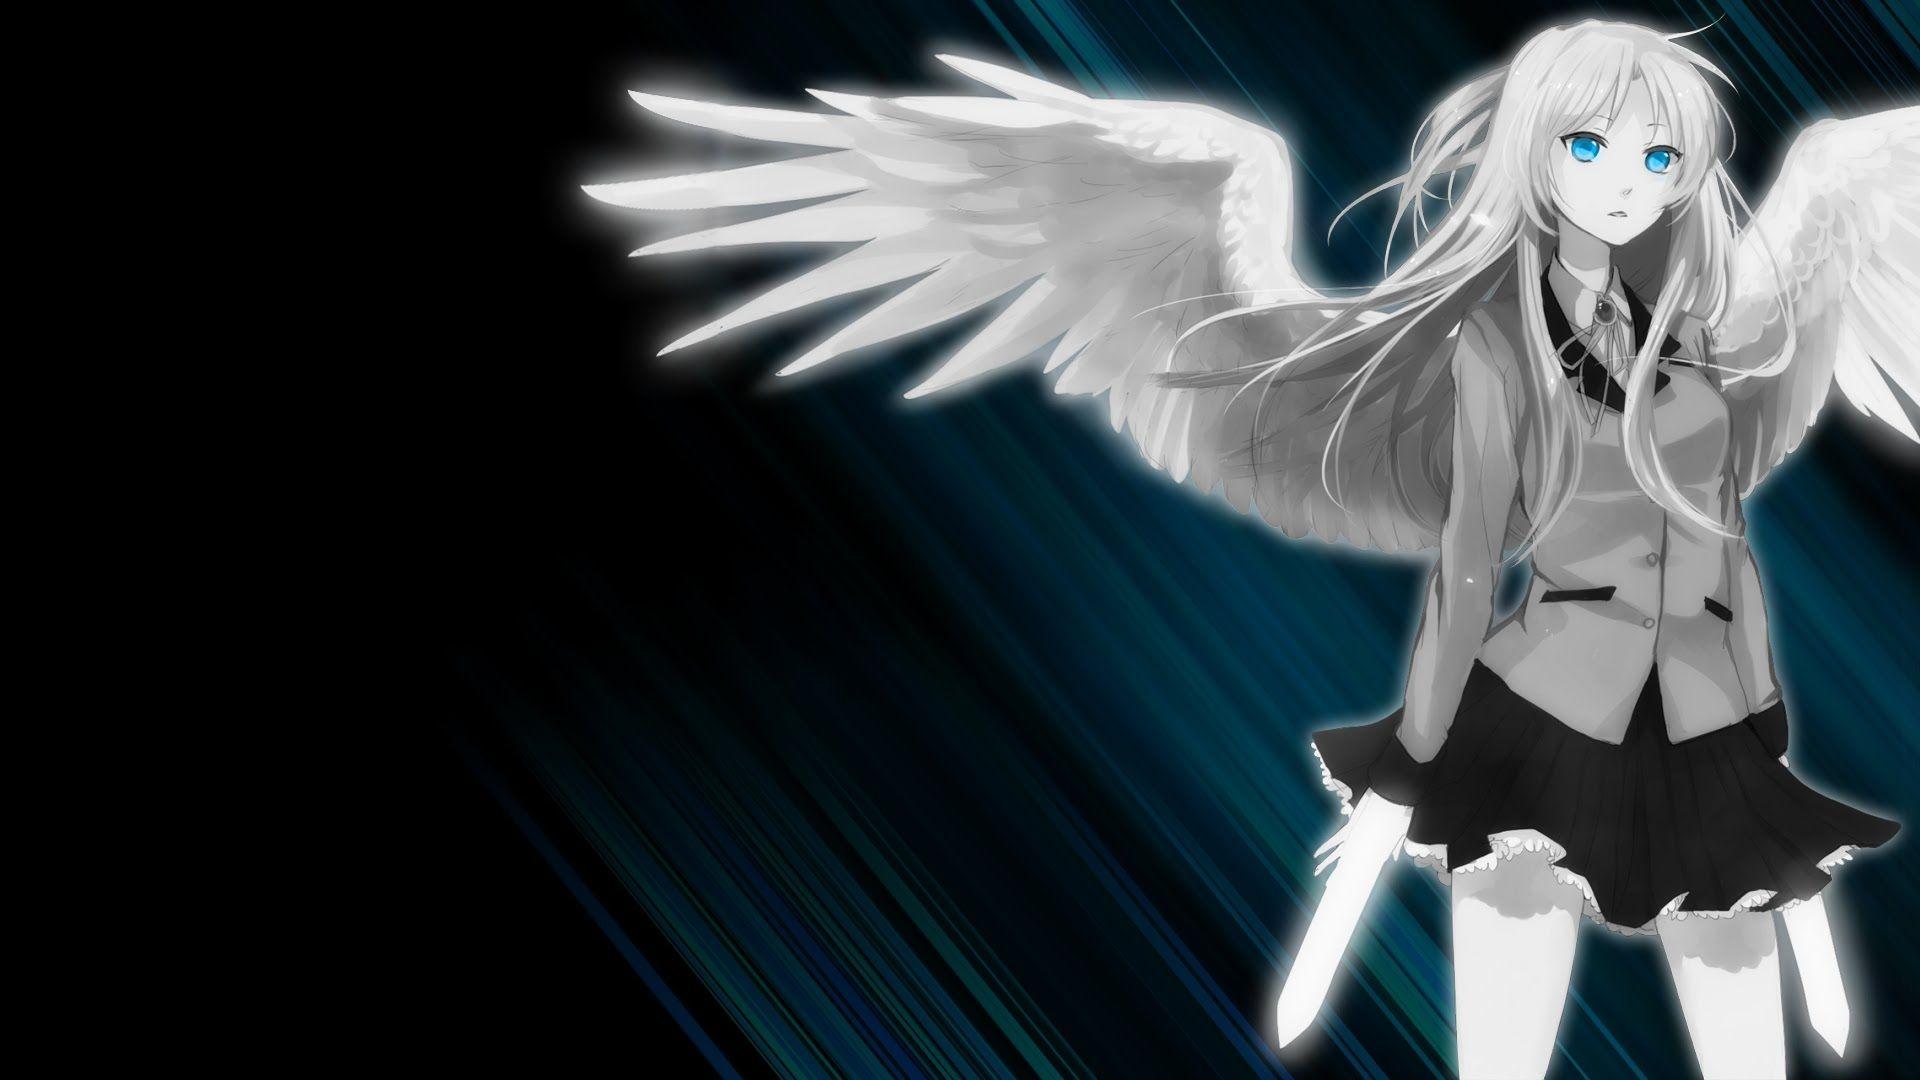 Fallen Angel Anime Girl Wallpaper Free Fallen Angel